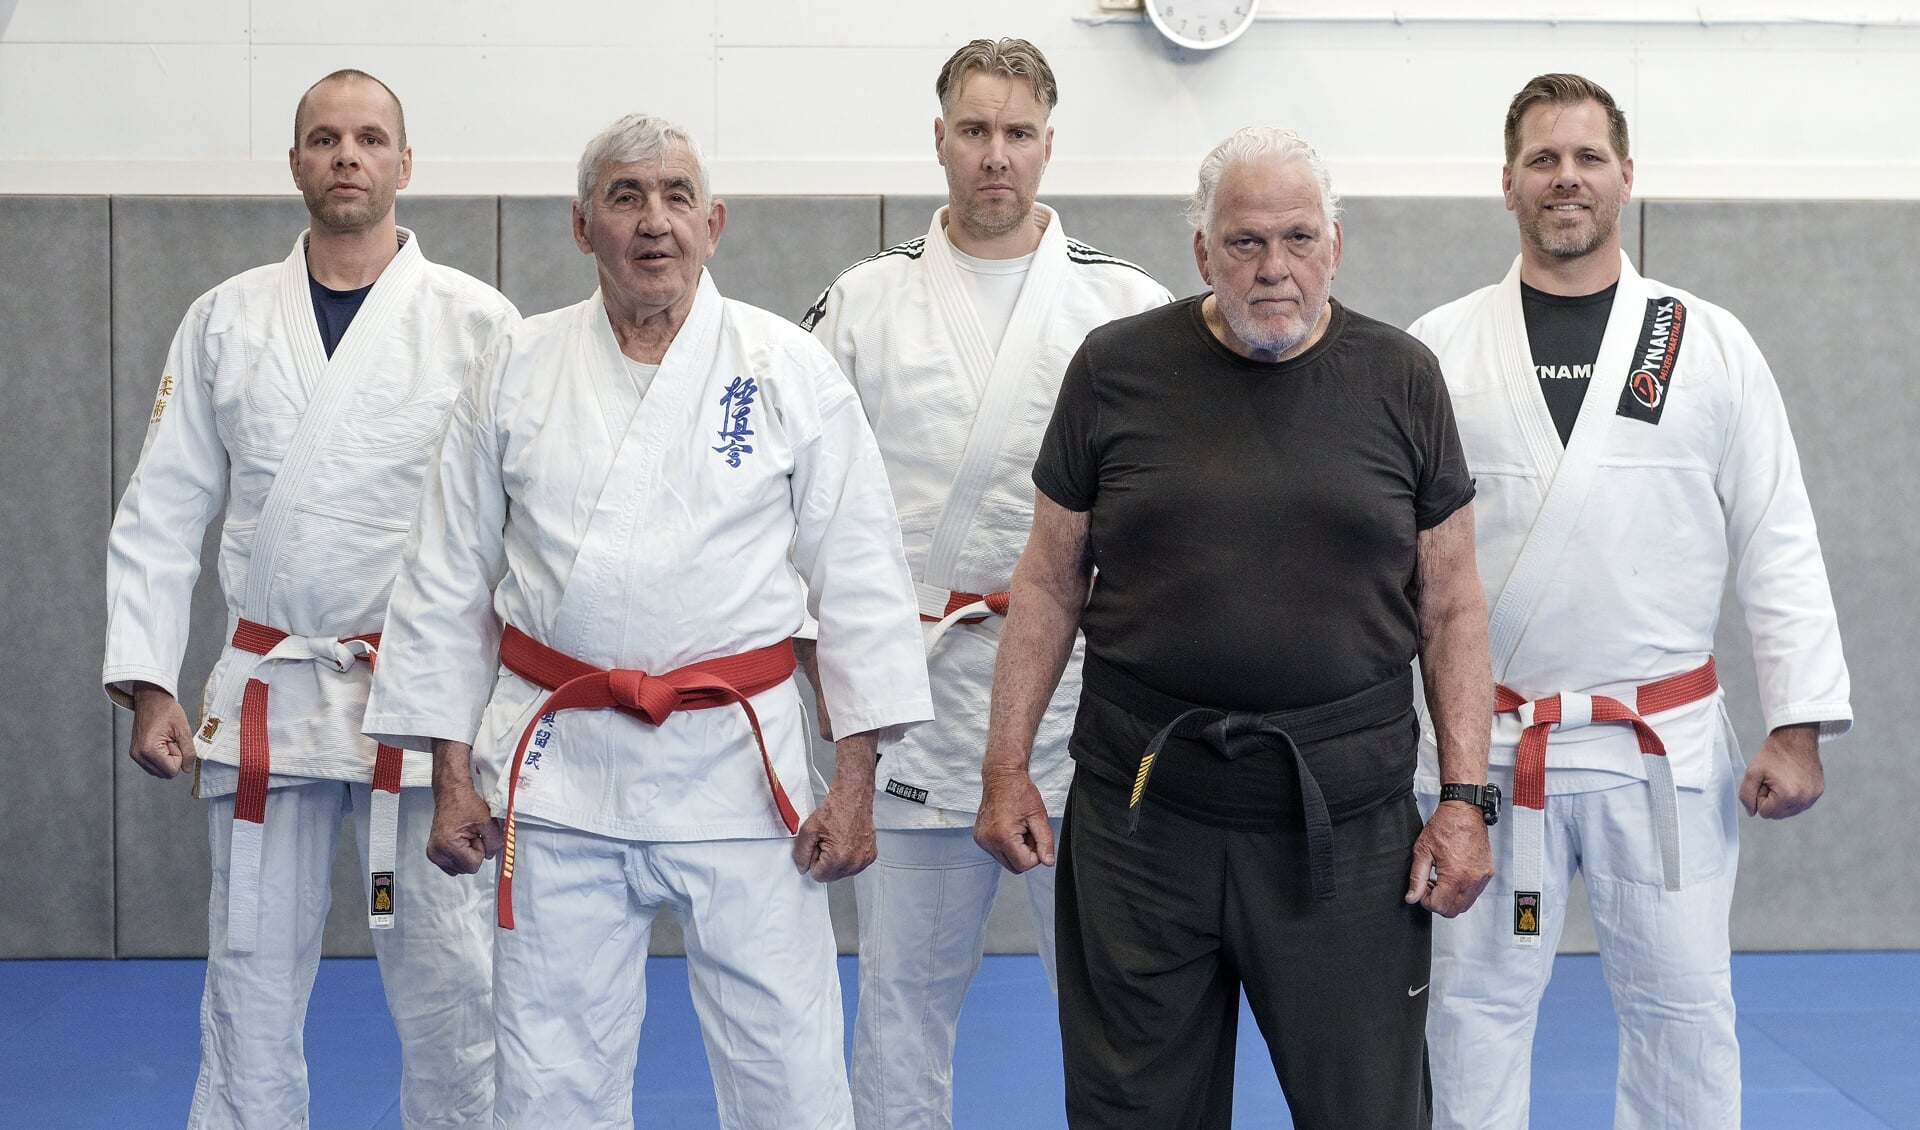 Voorgrond: van links naar rechts Jan van Looijen en Chris Dolman. Op de achterste rij de Weesper vechtsportleraren Eric, Jeroen en Antoni.